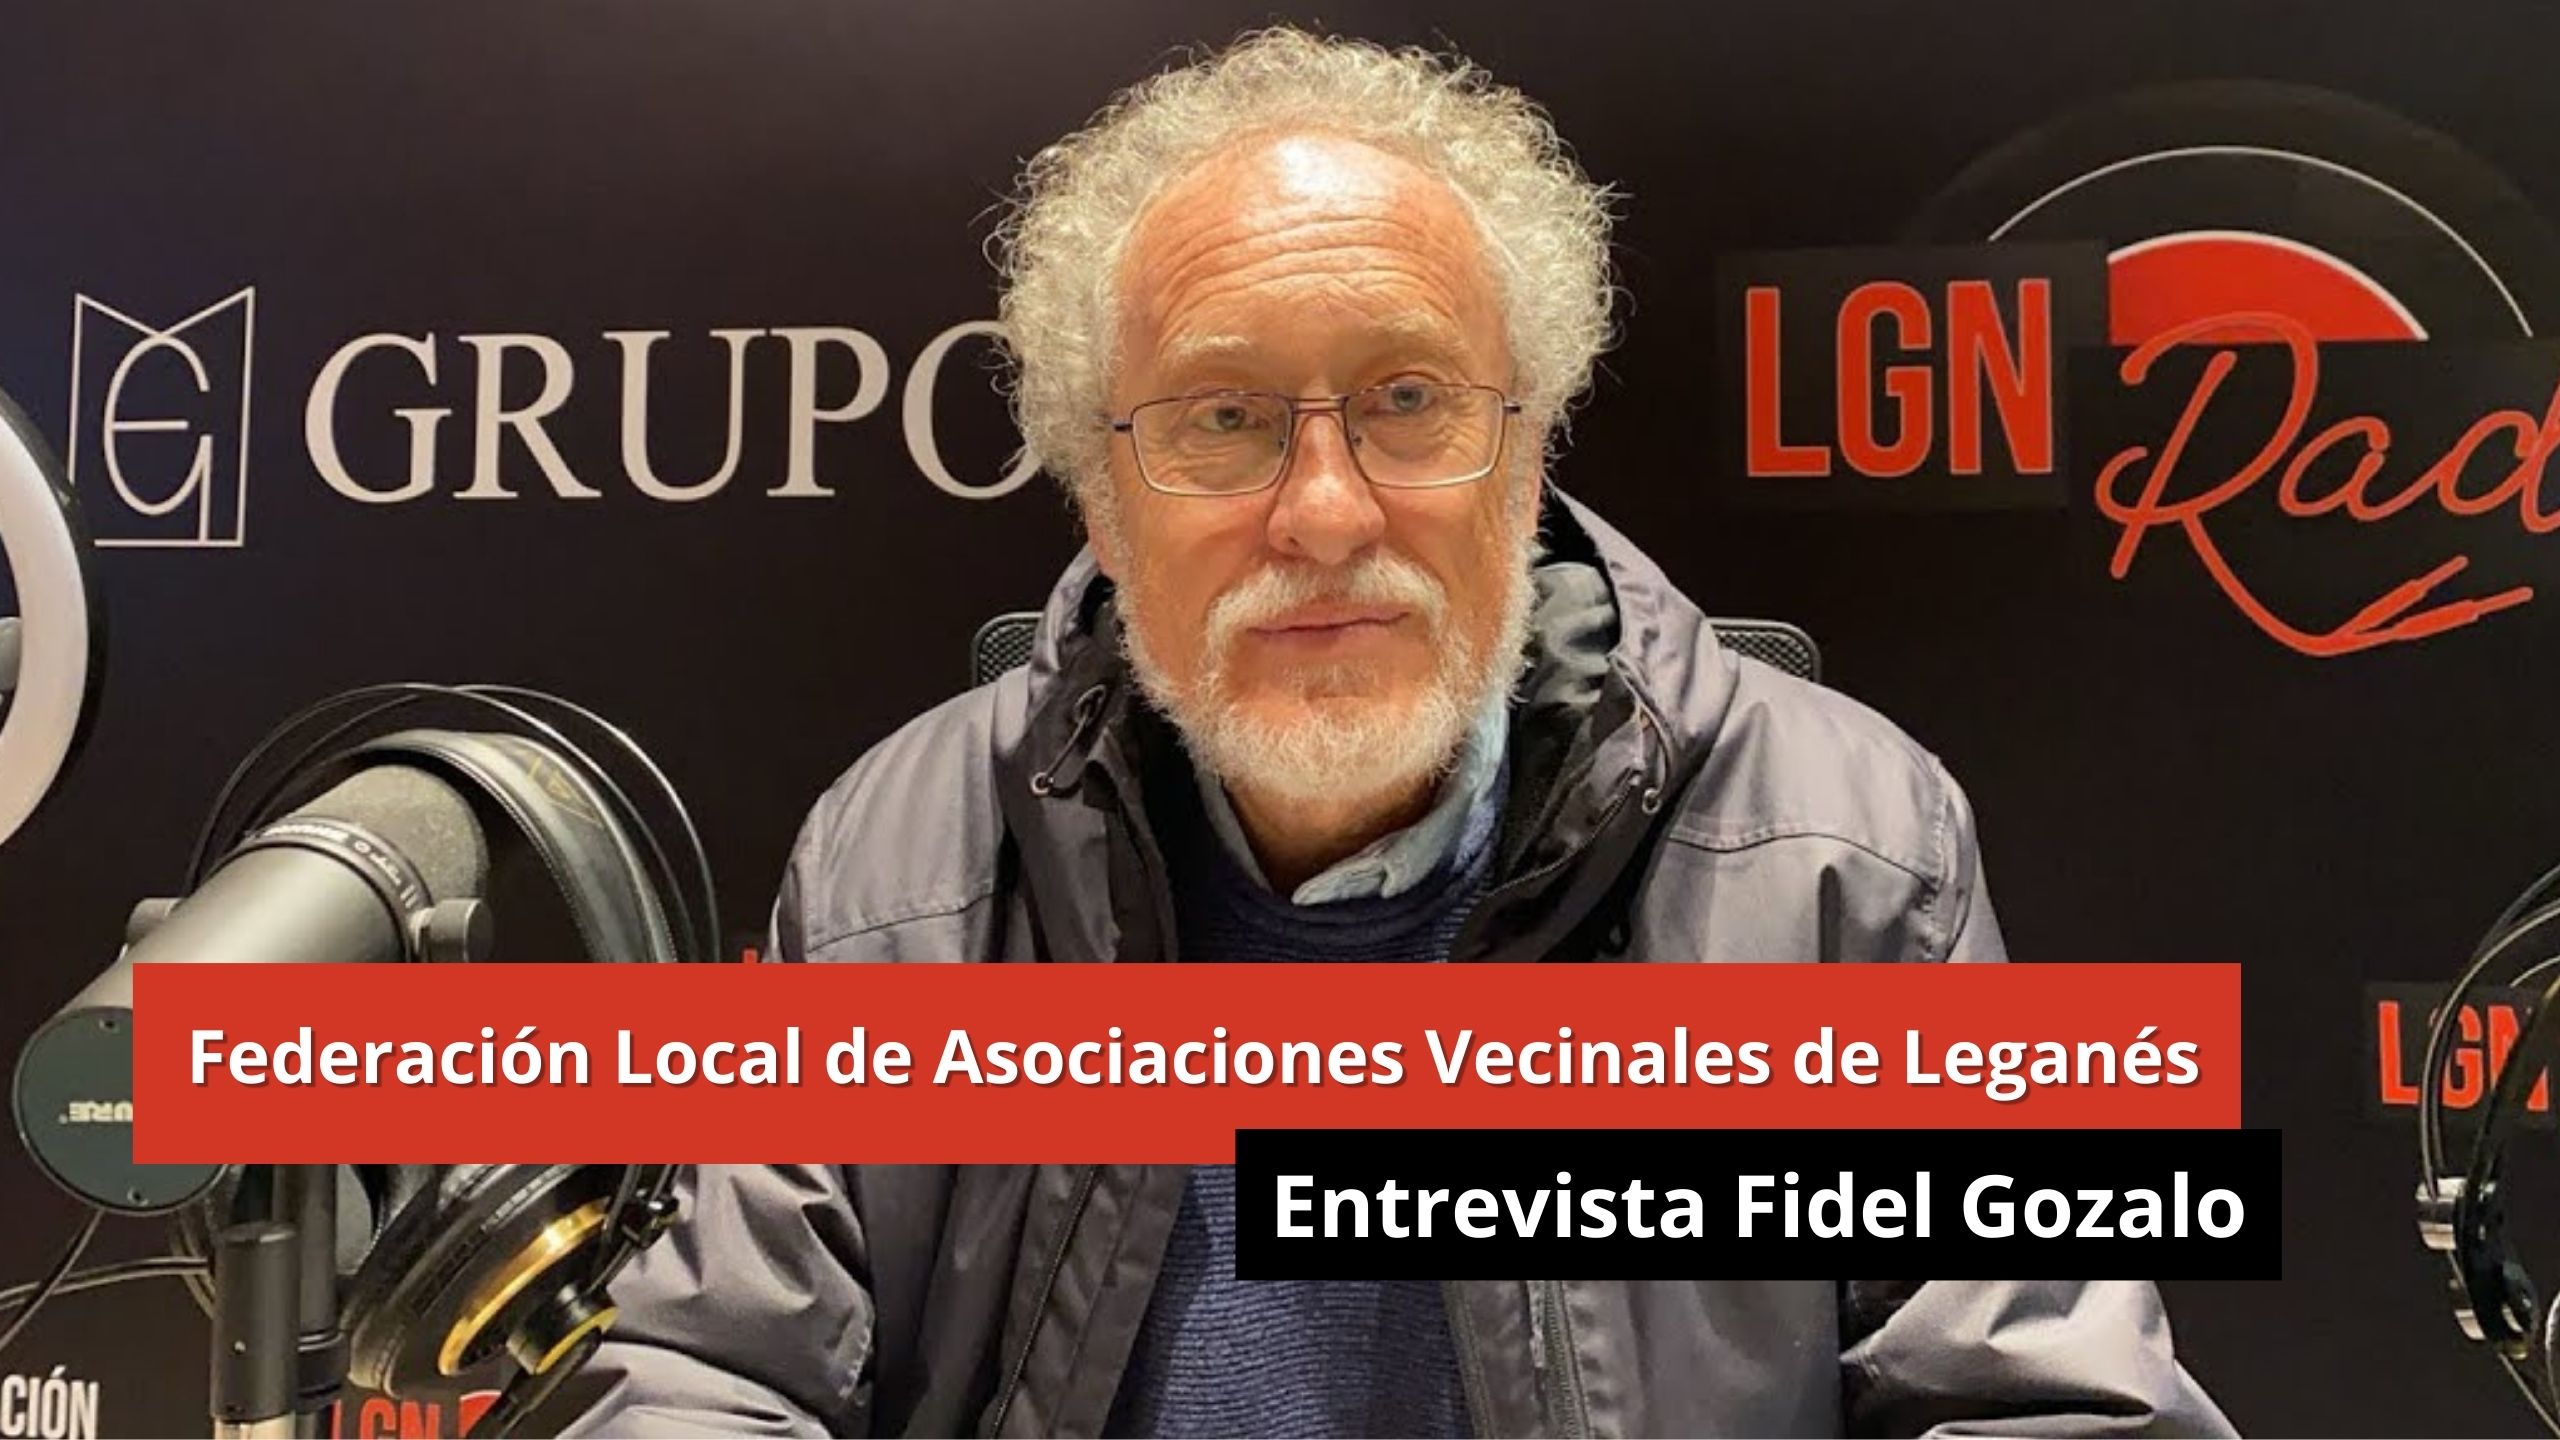 16-01-24 Federación Local de Asociaciones Vecinales de Leganés - Entrevista Fidel Gozalo